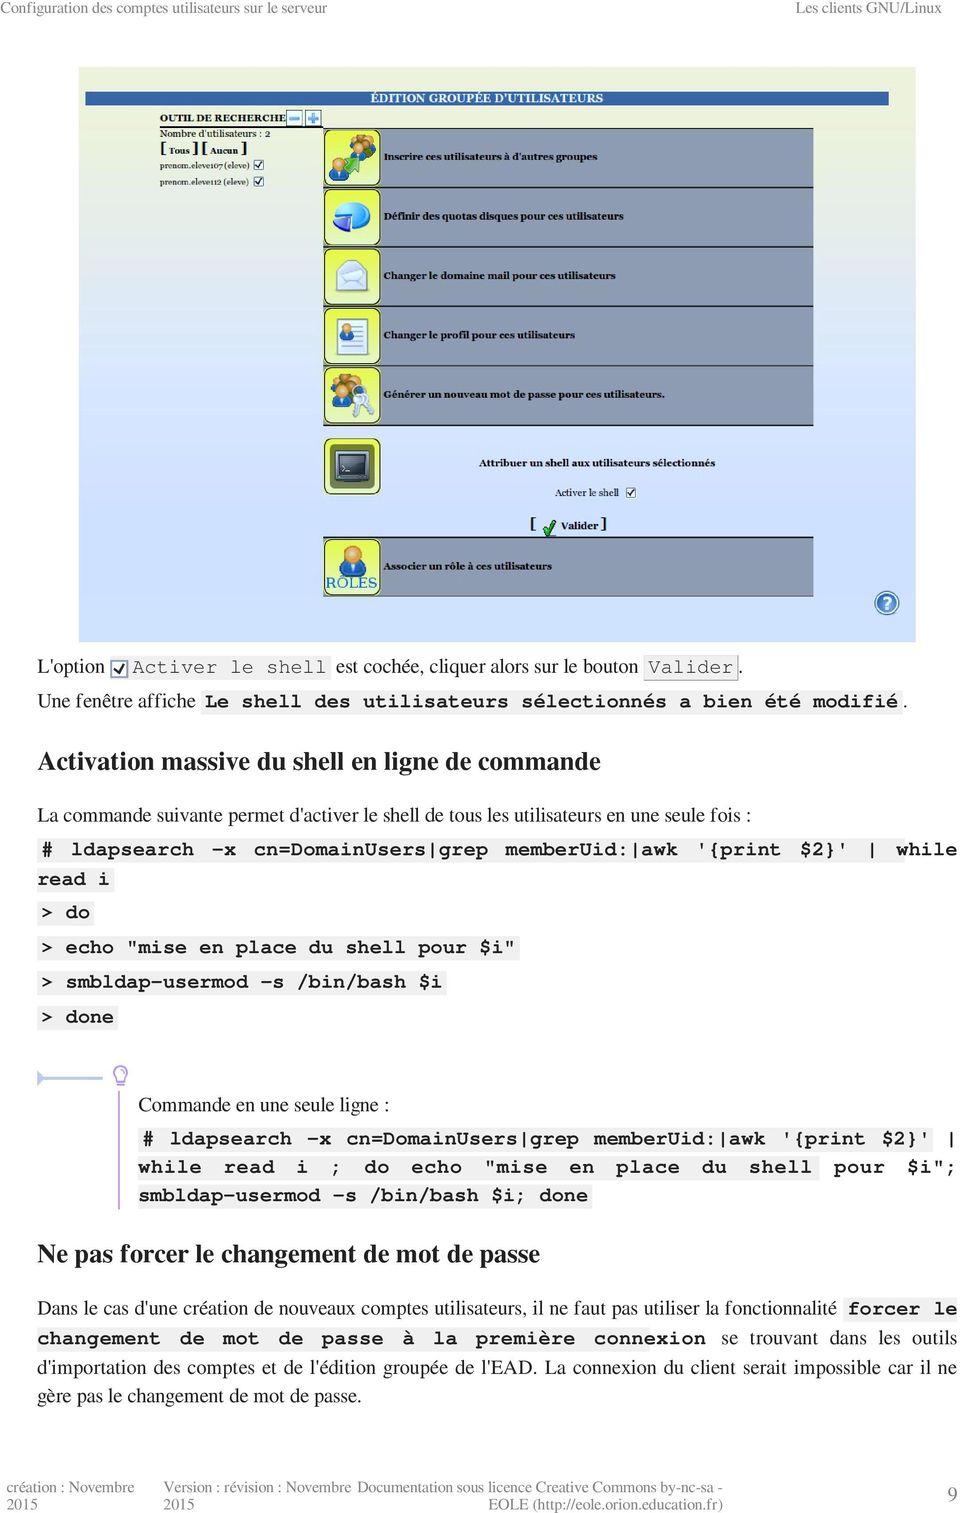 Activation massive du shell en ligne de commande La commande suivante permet d'activer le shell de tous les utilisateurs en une seule fois : # ldapsearch -x cn=domainusers grep memberuid: awk '{print